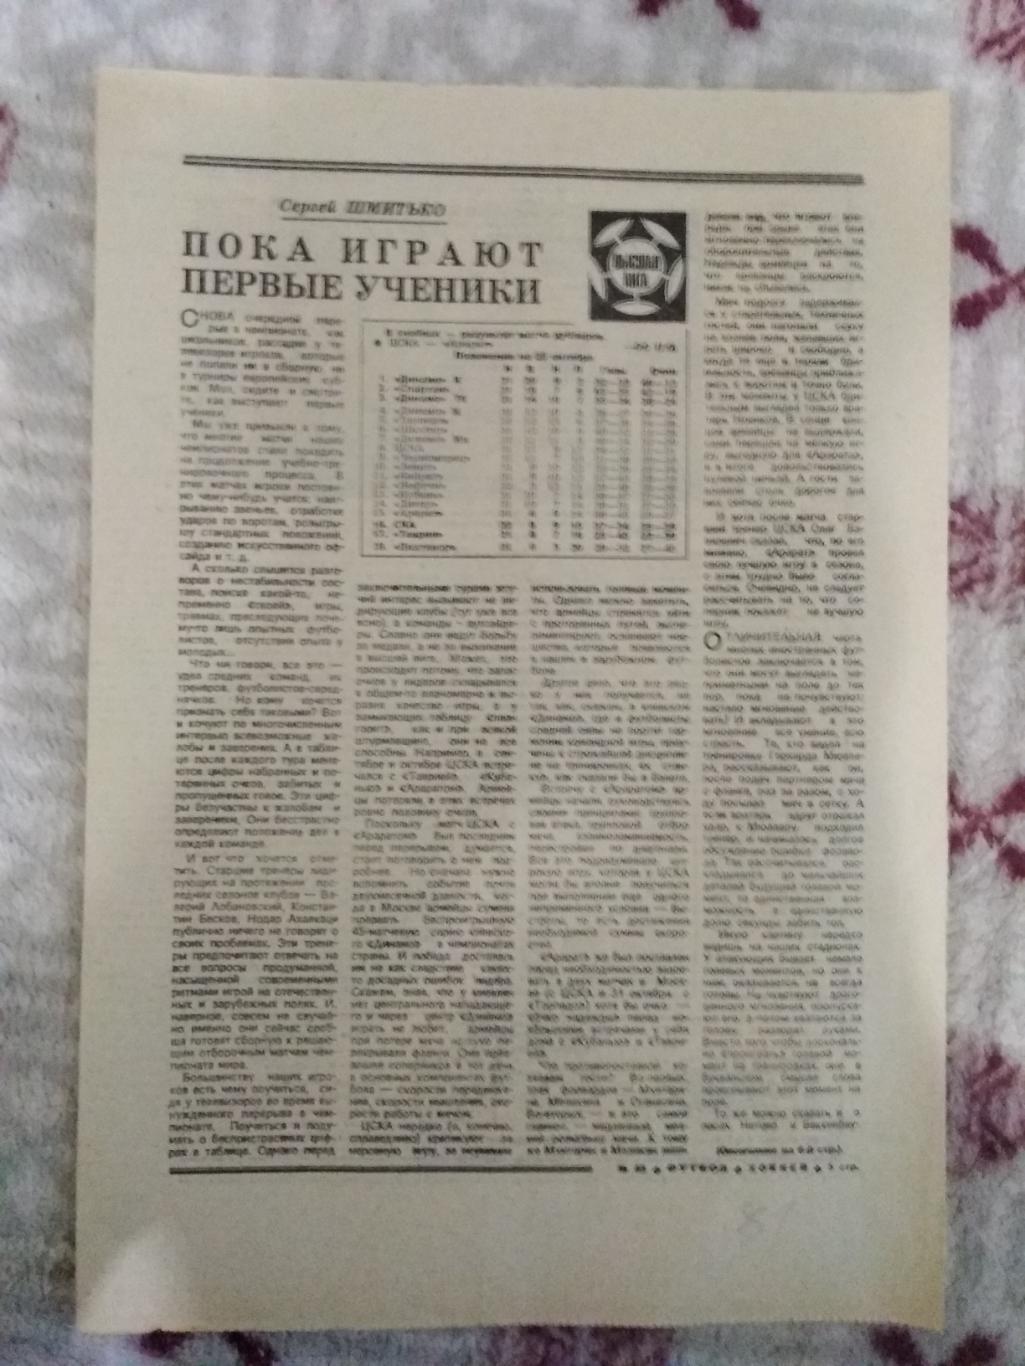 Статья.Футбол.Чемпионат СССР.Дублеры.Футбол-Хоккей 1981 г.